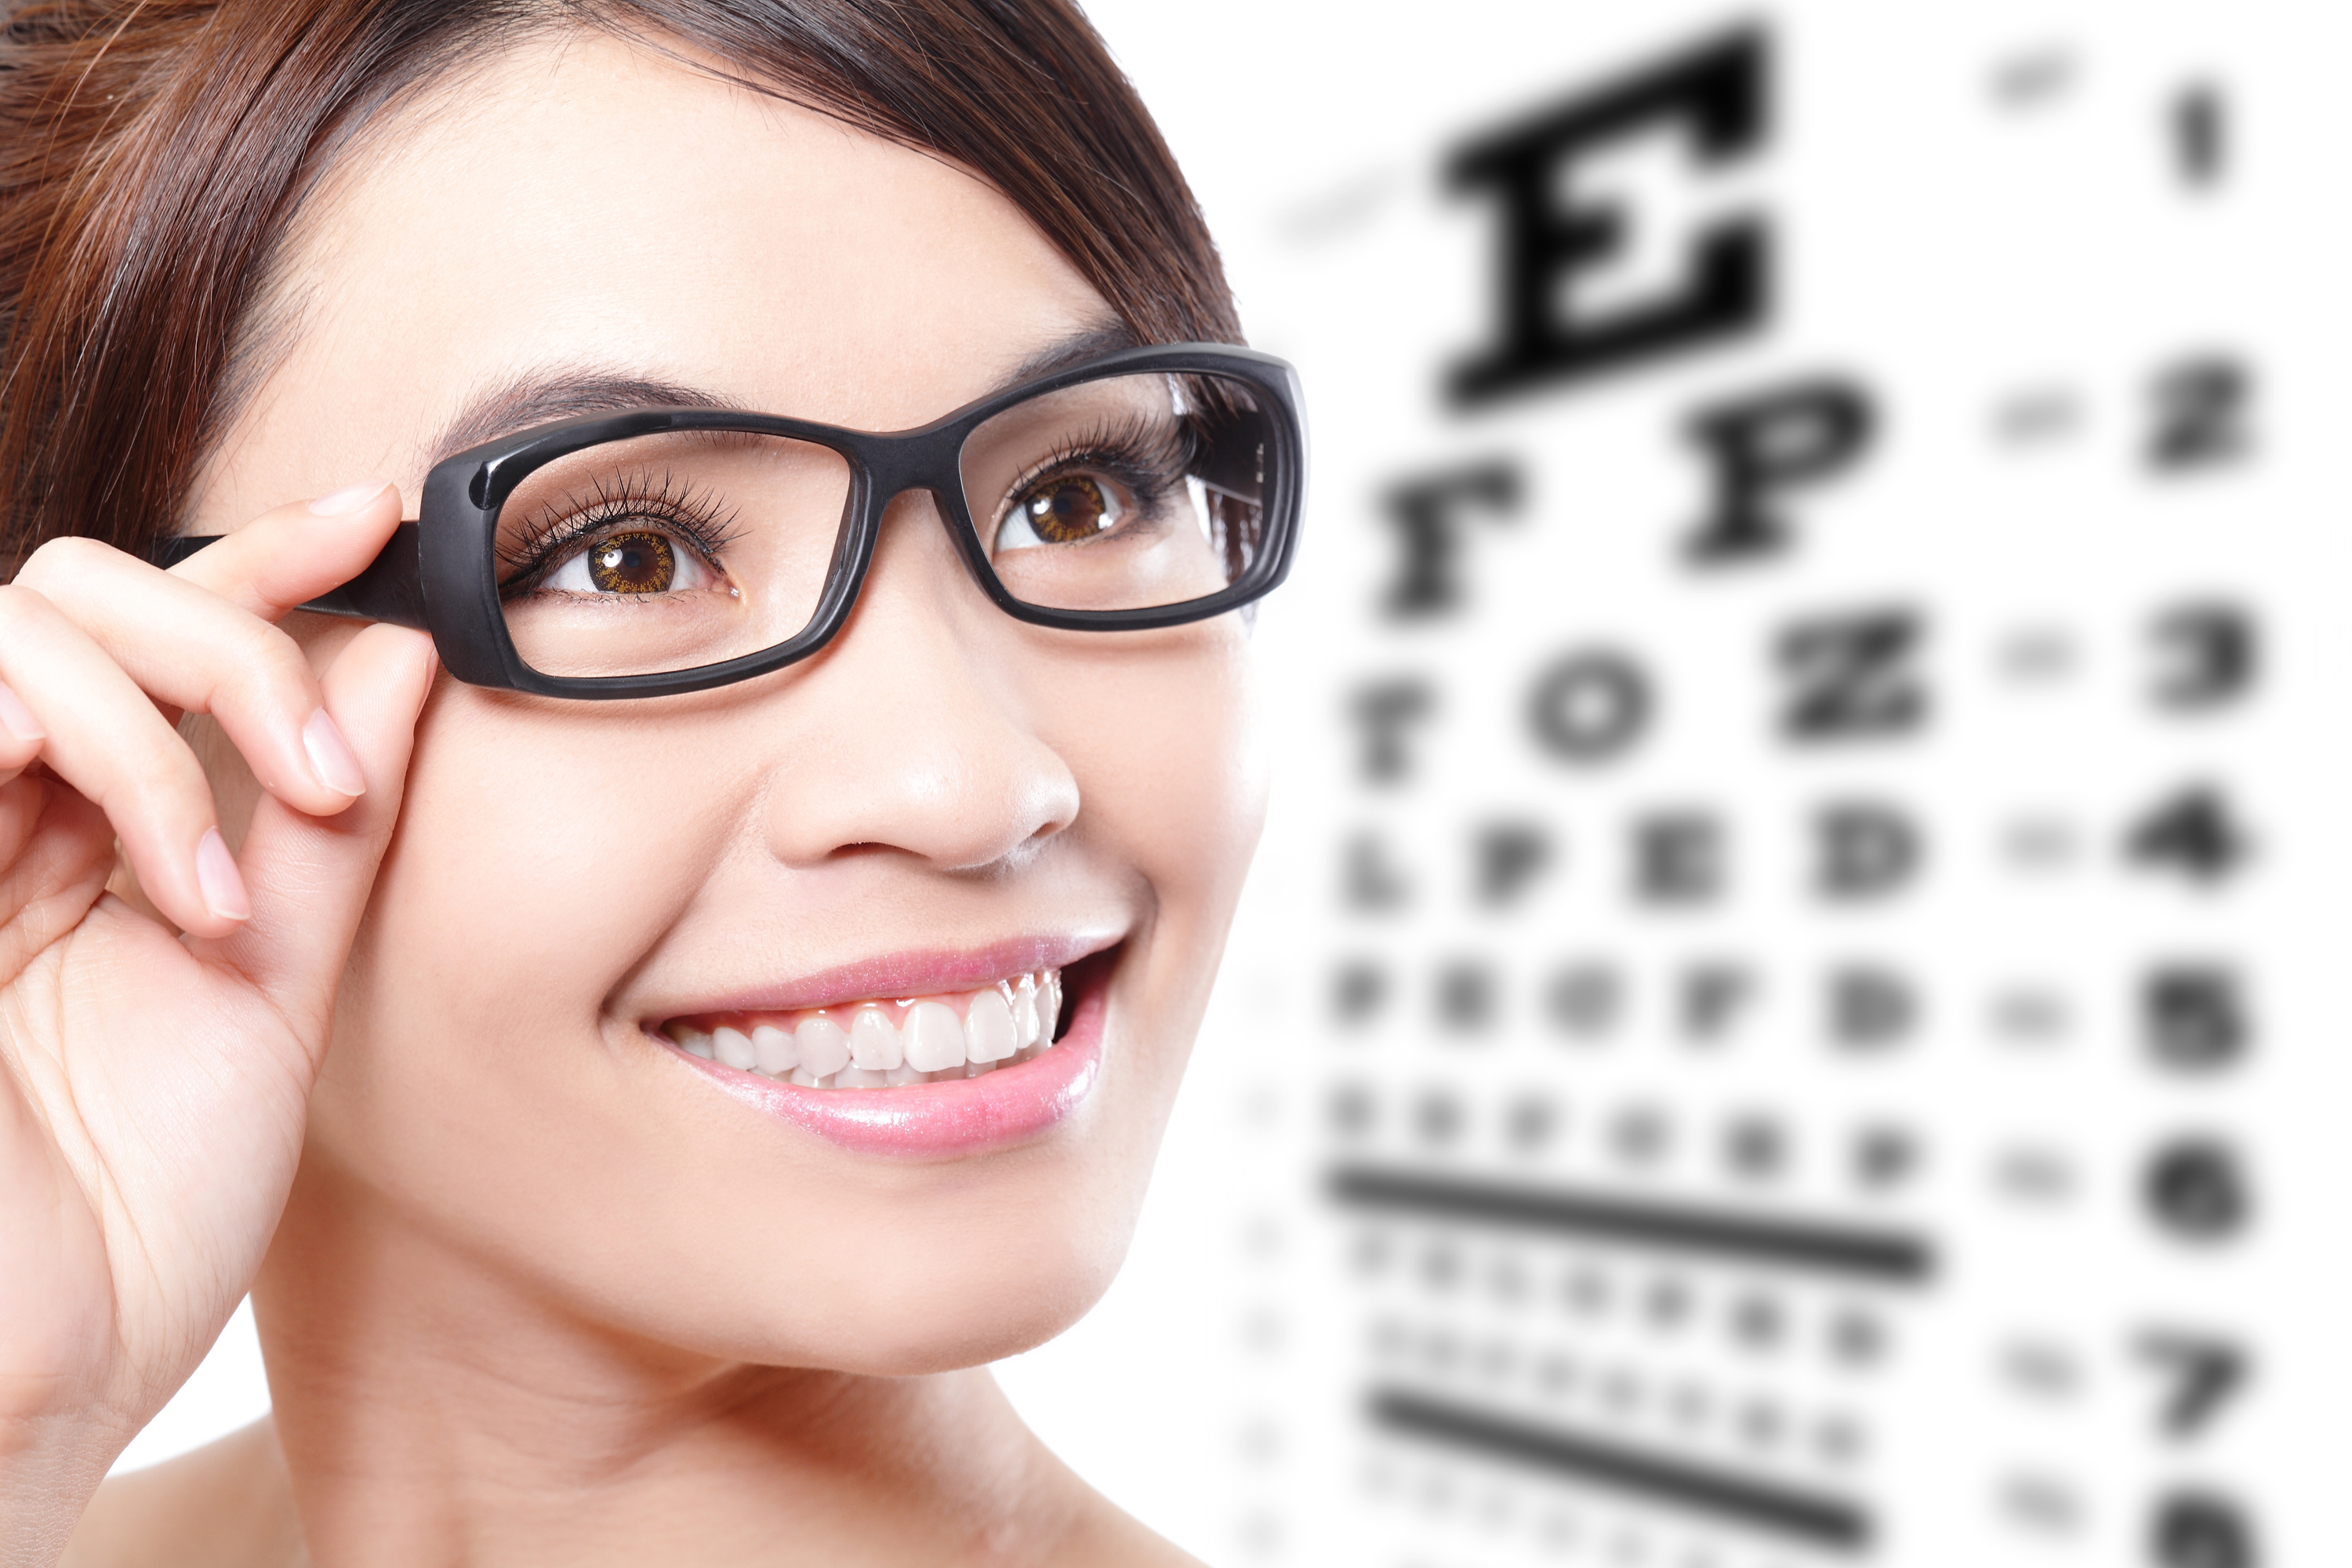 Фактическое зрение. Оптика очки для зрения. Реклама очков для зрения. Девушка в очках для зрения. Очки для дальнозоркости.